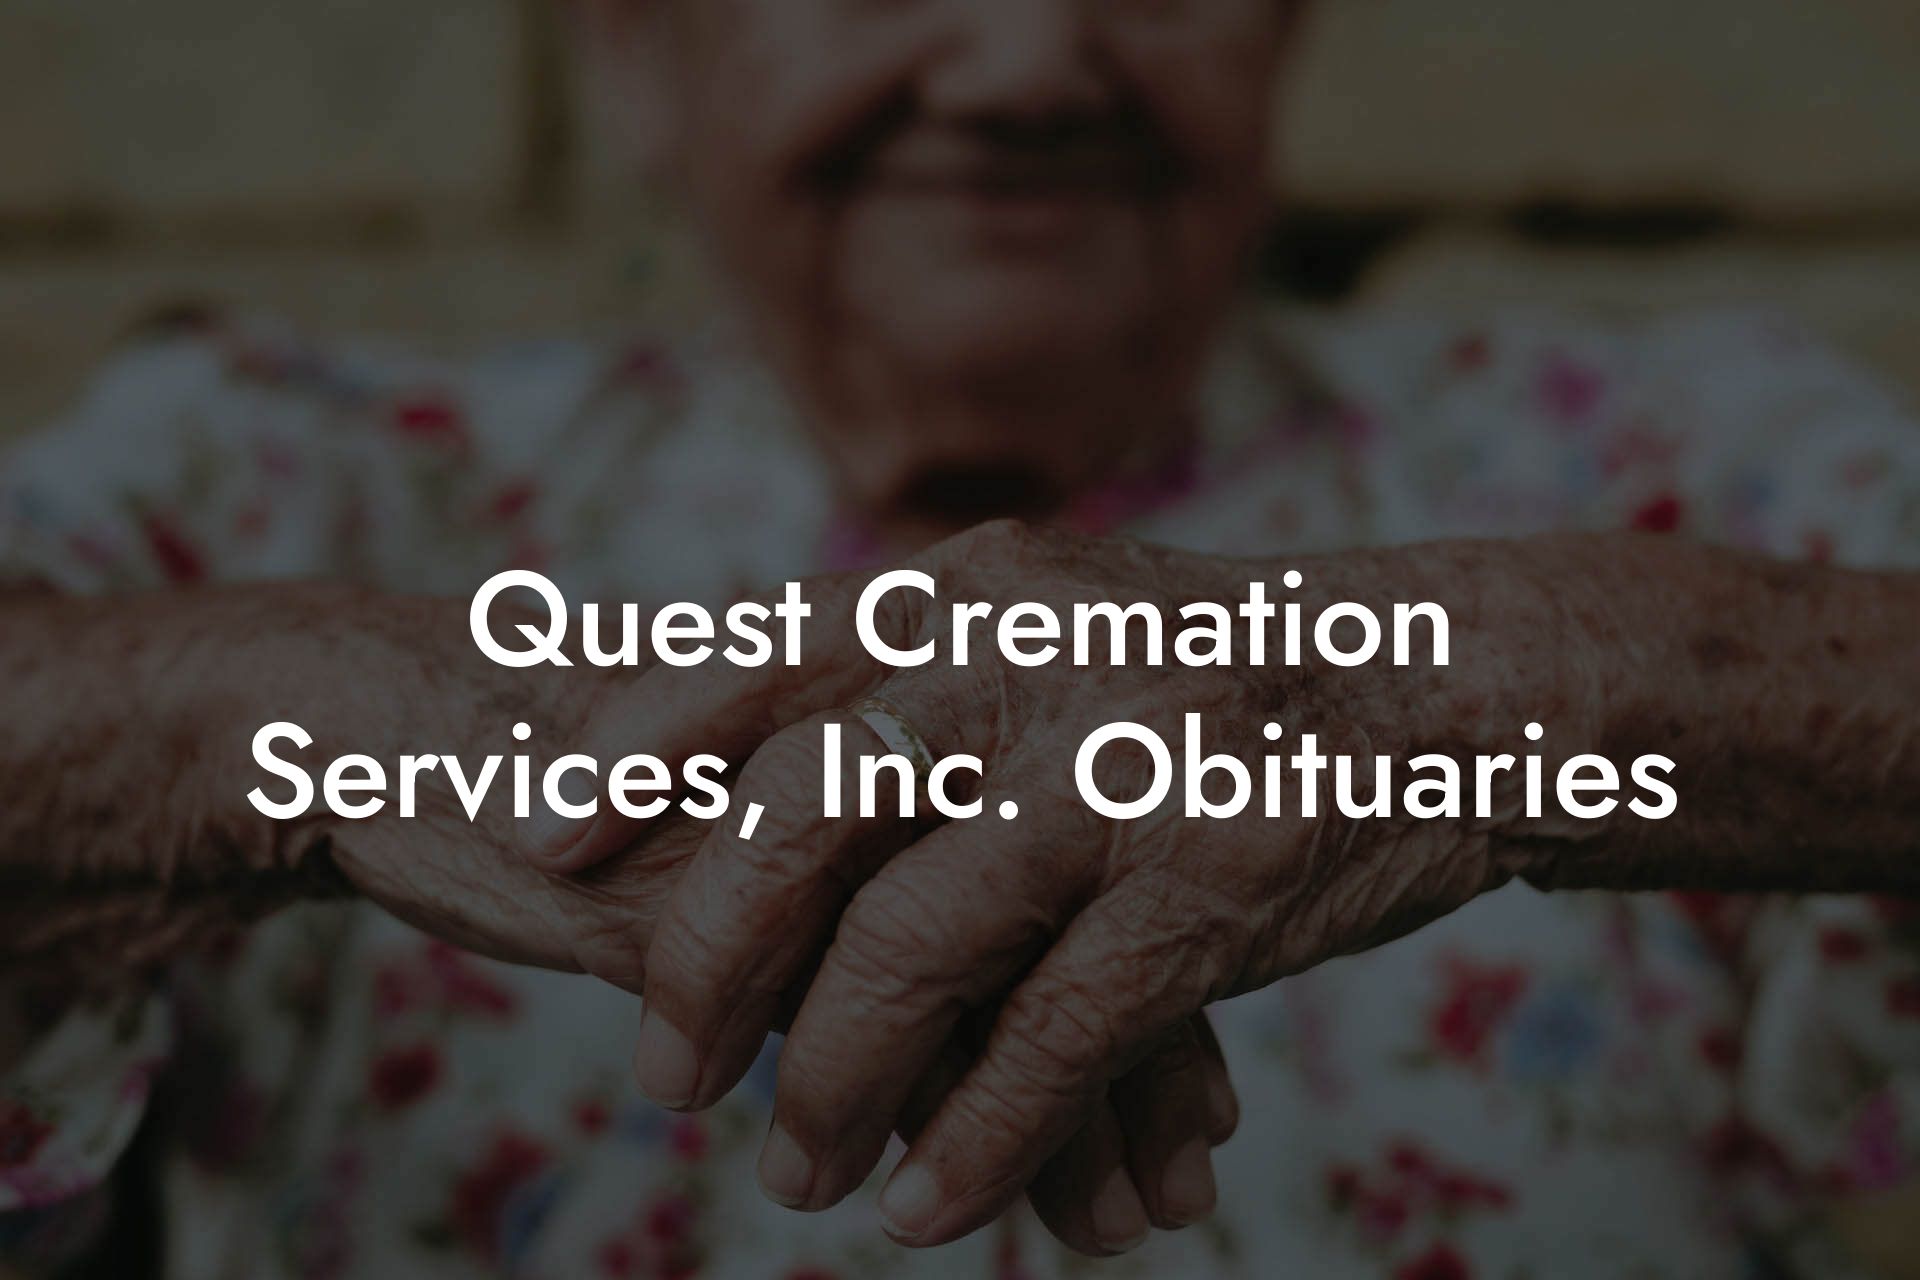 Quest Cremation Services, Inc. Obituaries